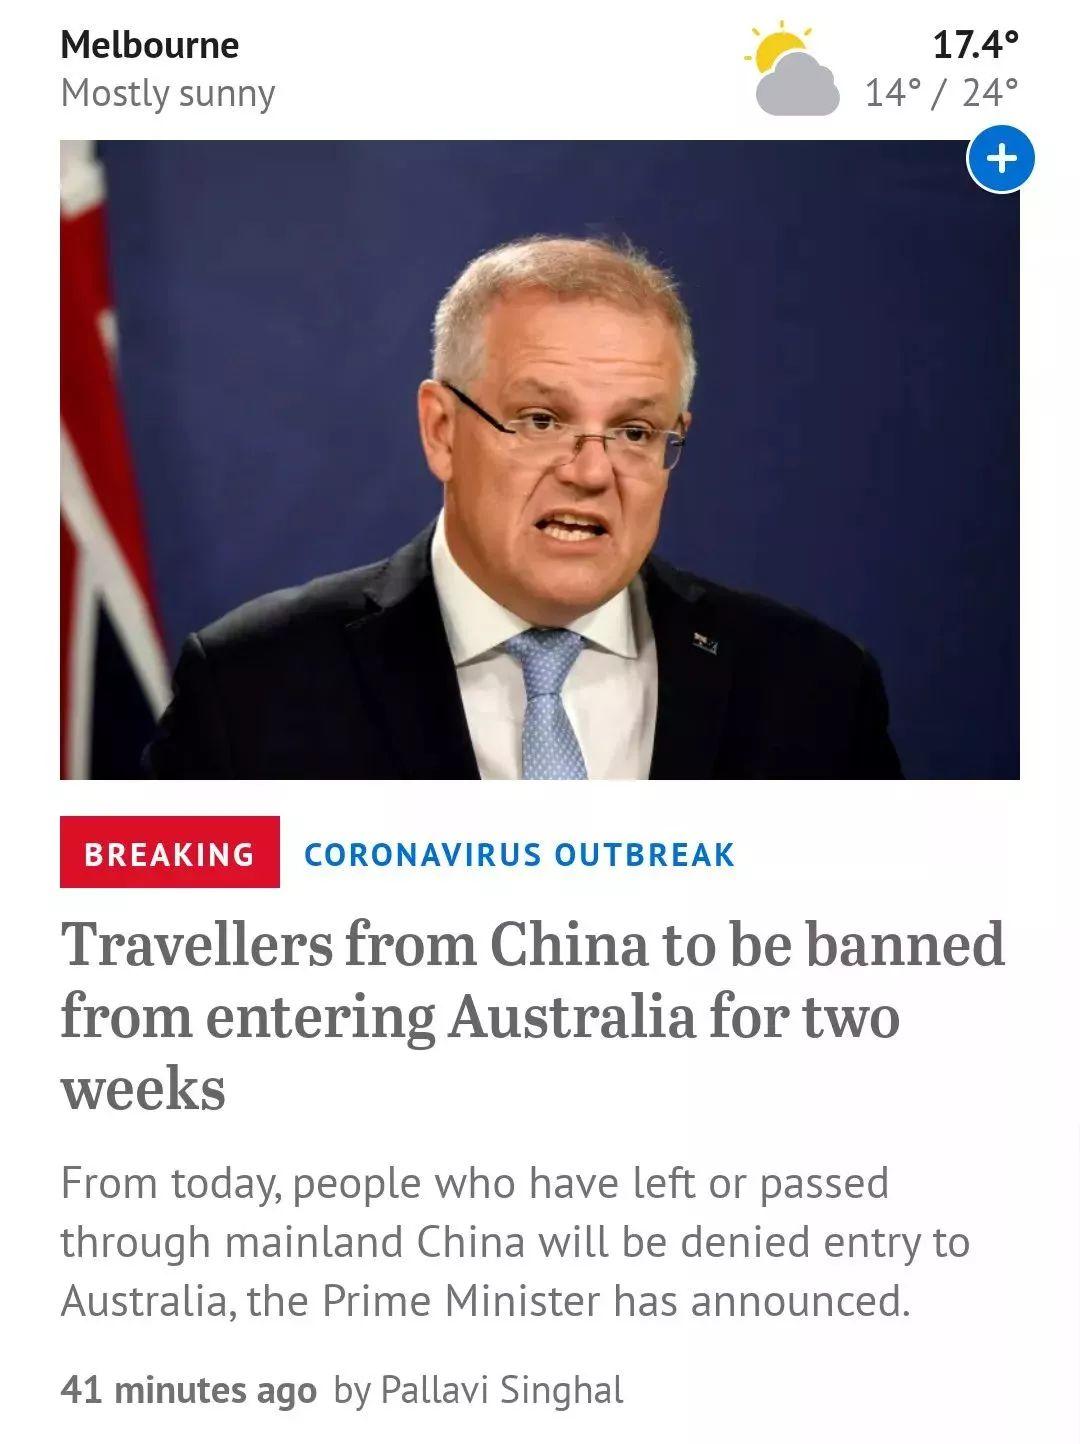 澳洲暂时禁止大陆入境，公民&PR除外；澳洲新冠病毒确诊人数增至12人